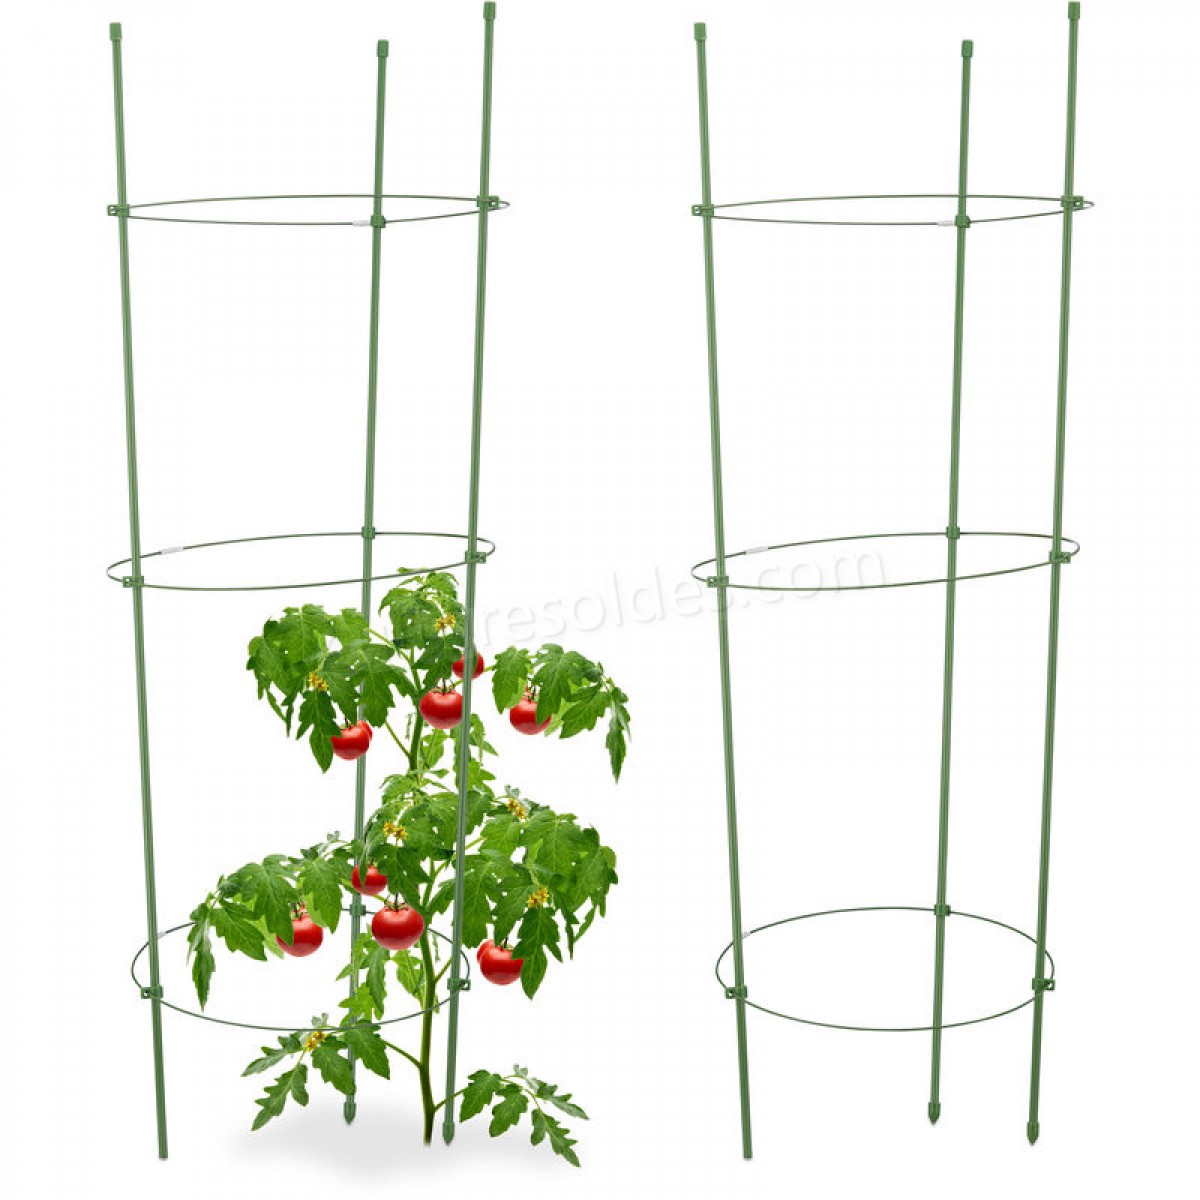  Cage à tomates Tuteur plantes grimpantes, support à 3 anneaux, jardin, balcon, set de 2, 76 cm long, vert soldes en ligne -  Cage à tomates Tuteur plantes grimpantes, support à 3 anneaux, jardin, balcon, set de 2, 76 cm long, vert soldes en ligne